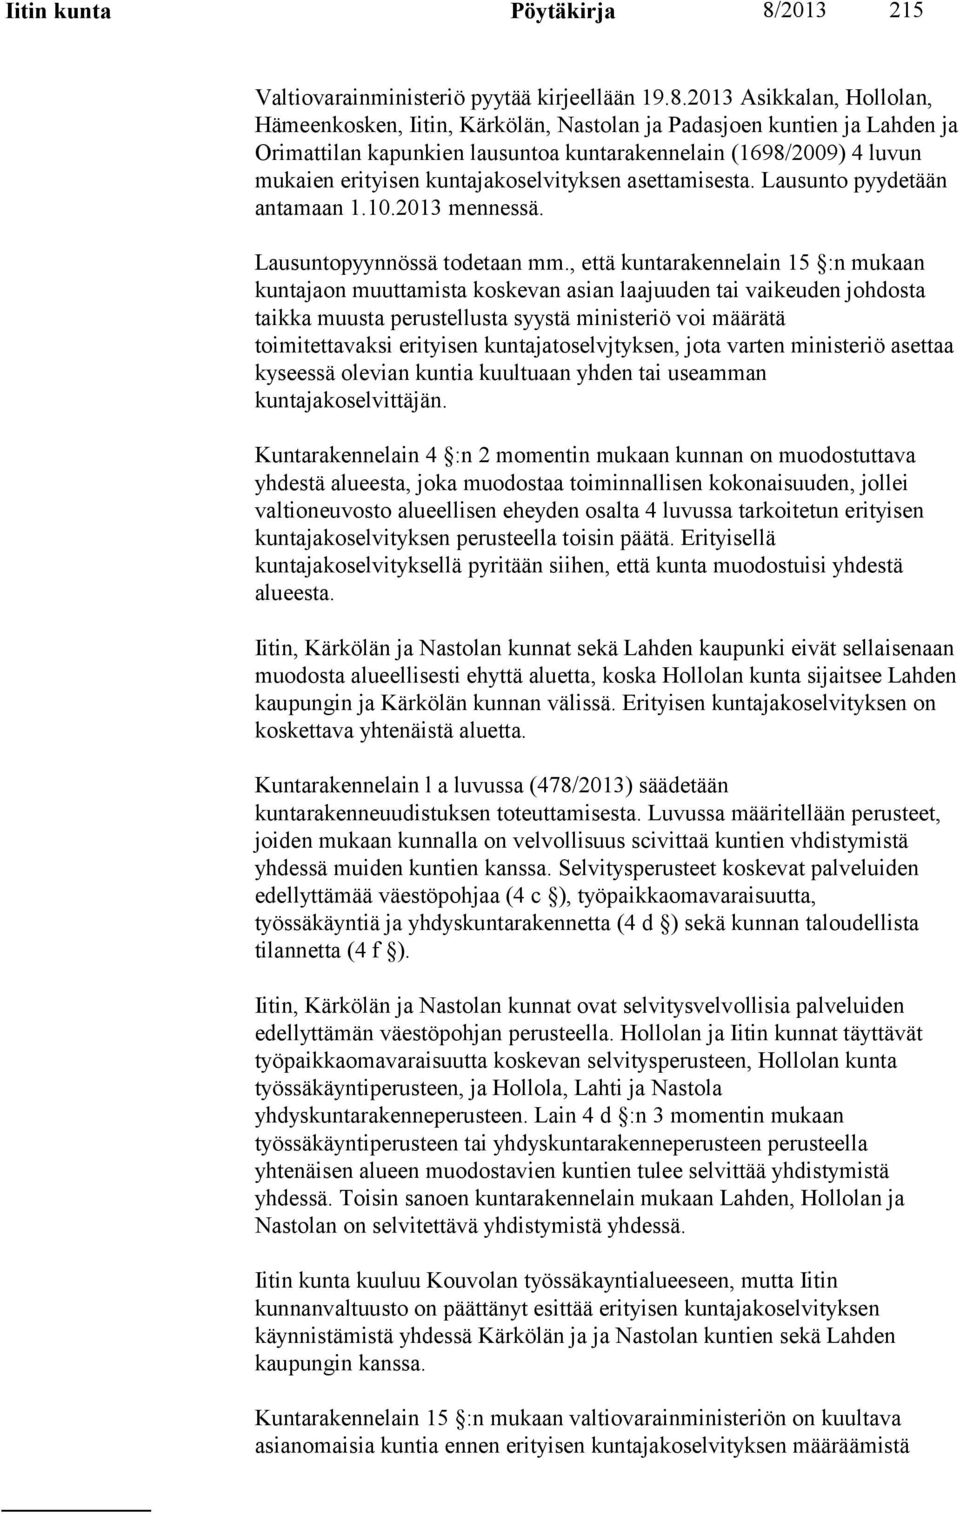 2013 Asikkalan, Hollolan, Hämeenkosken, Iitin, Kärkölän, Nastolan ja Padasjoen kuntien ja Lahden ja Orimattilan kapunkien lausuntoa kuntarakennelain (1698/2009) 4 luvun mukaien erityisen